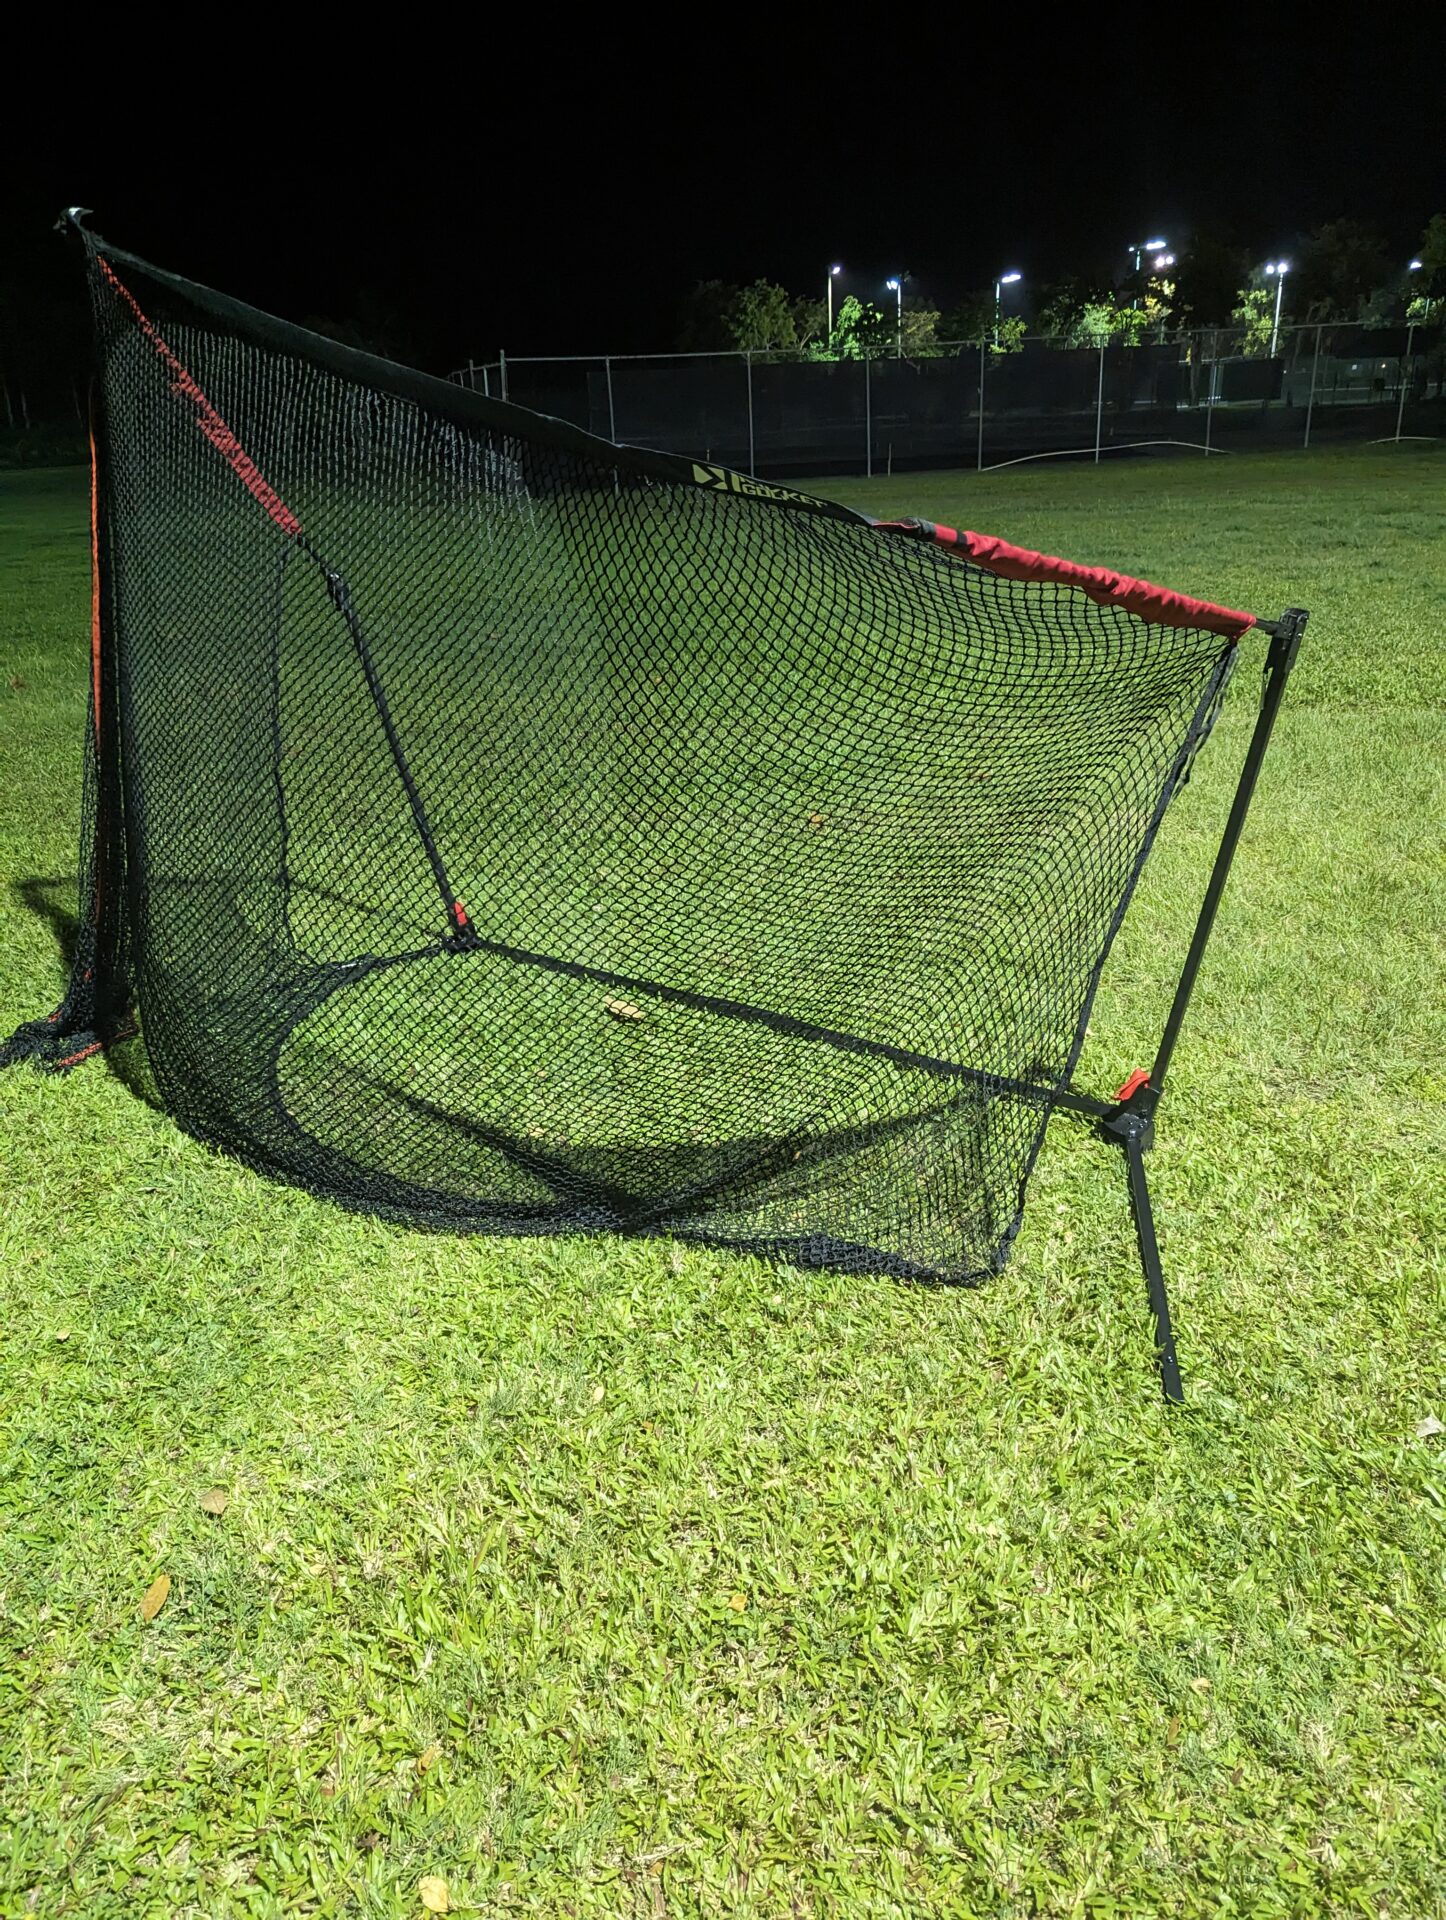 a net on a grass field